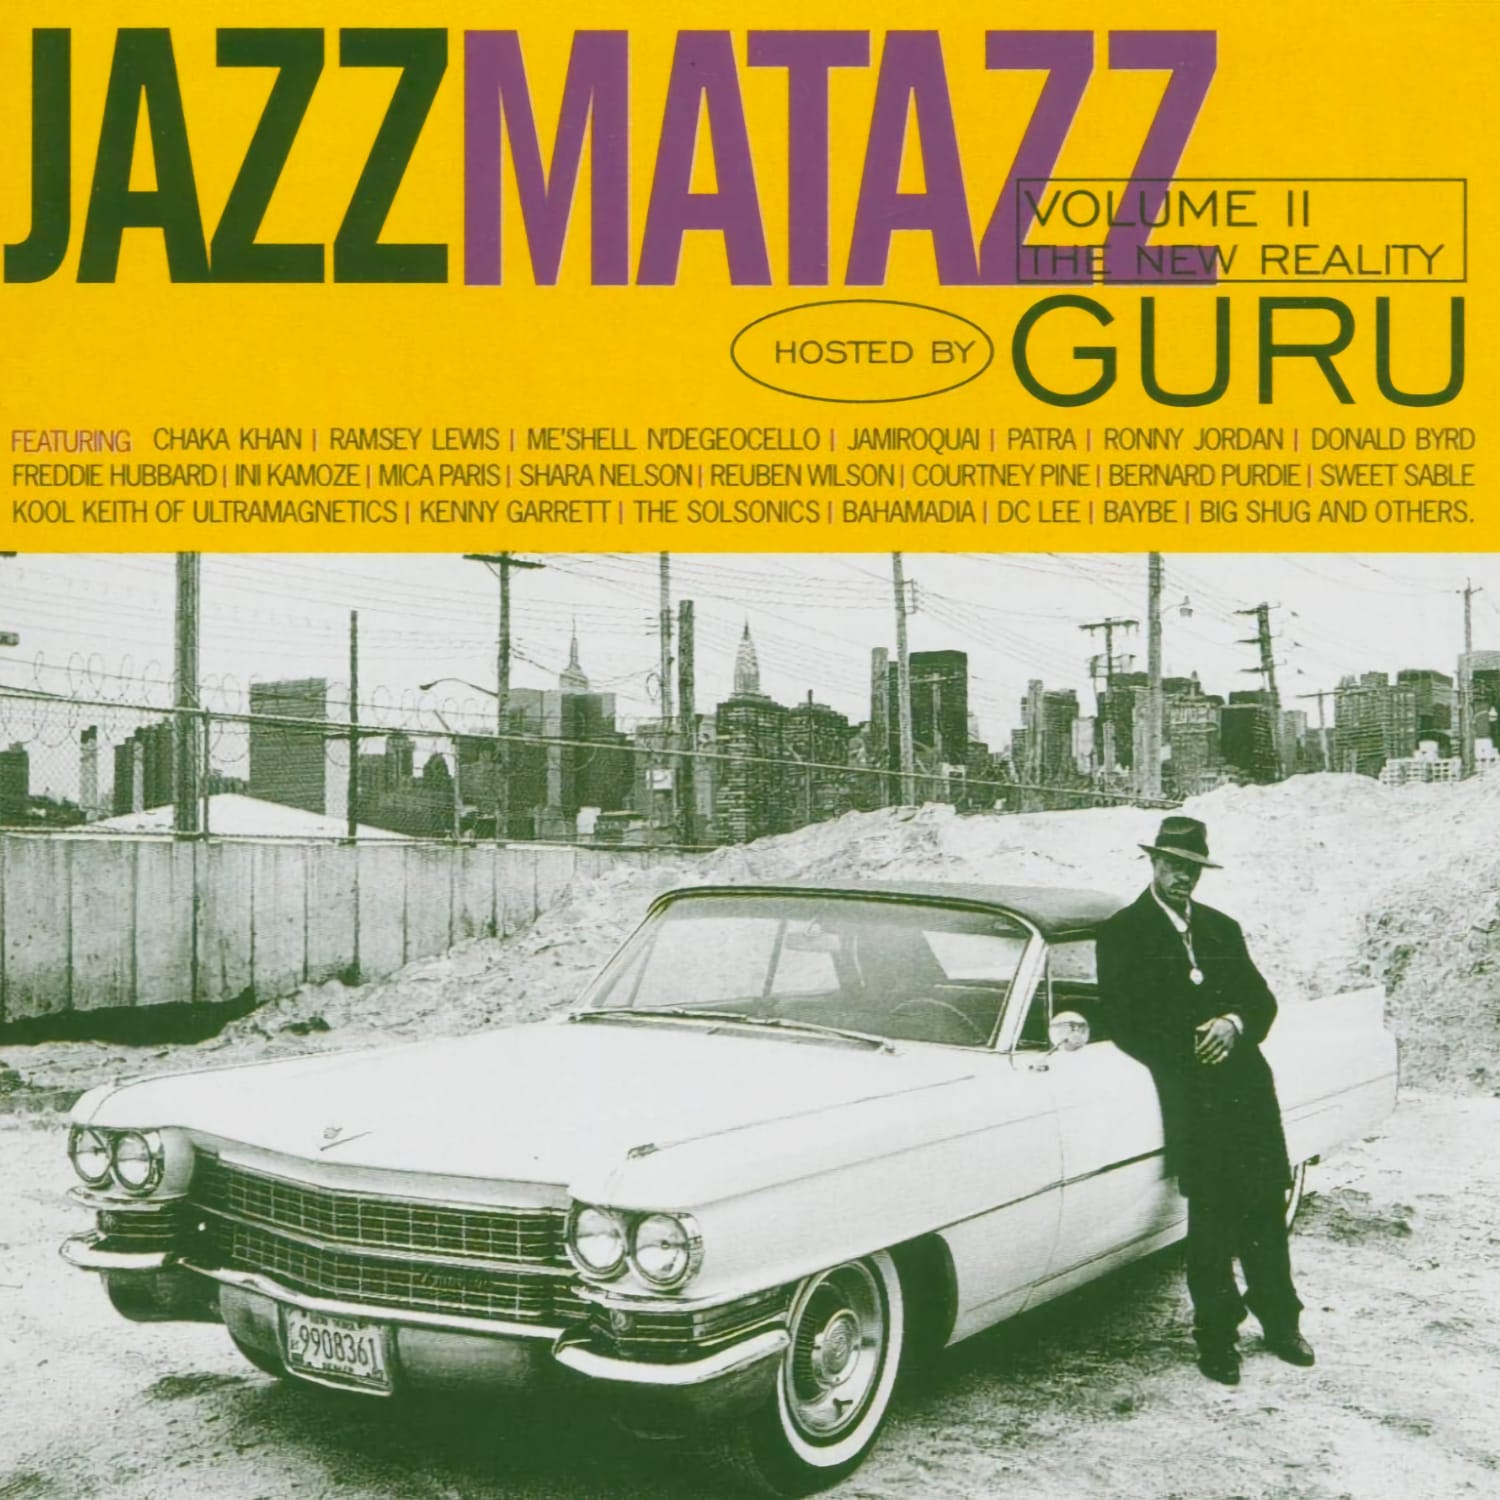 Guru - Jazzmatazz Volume 2 The New Reality